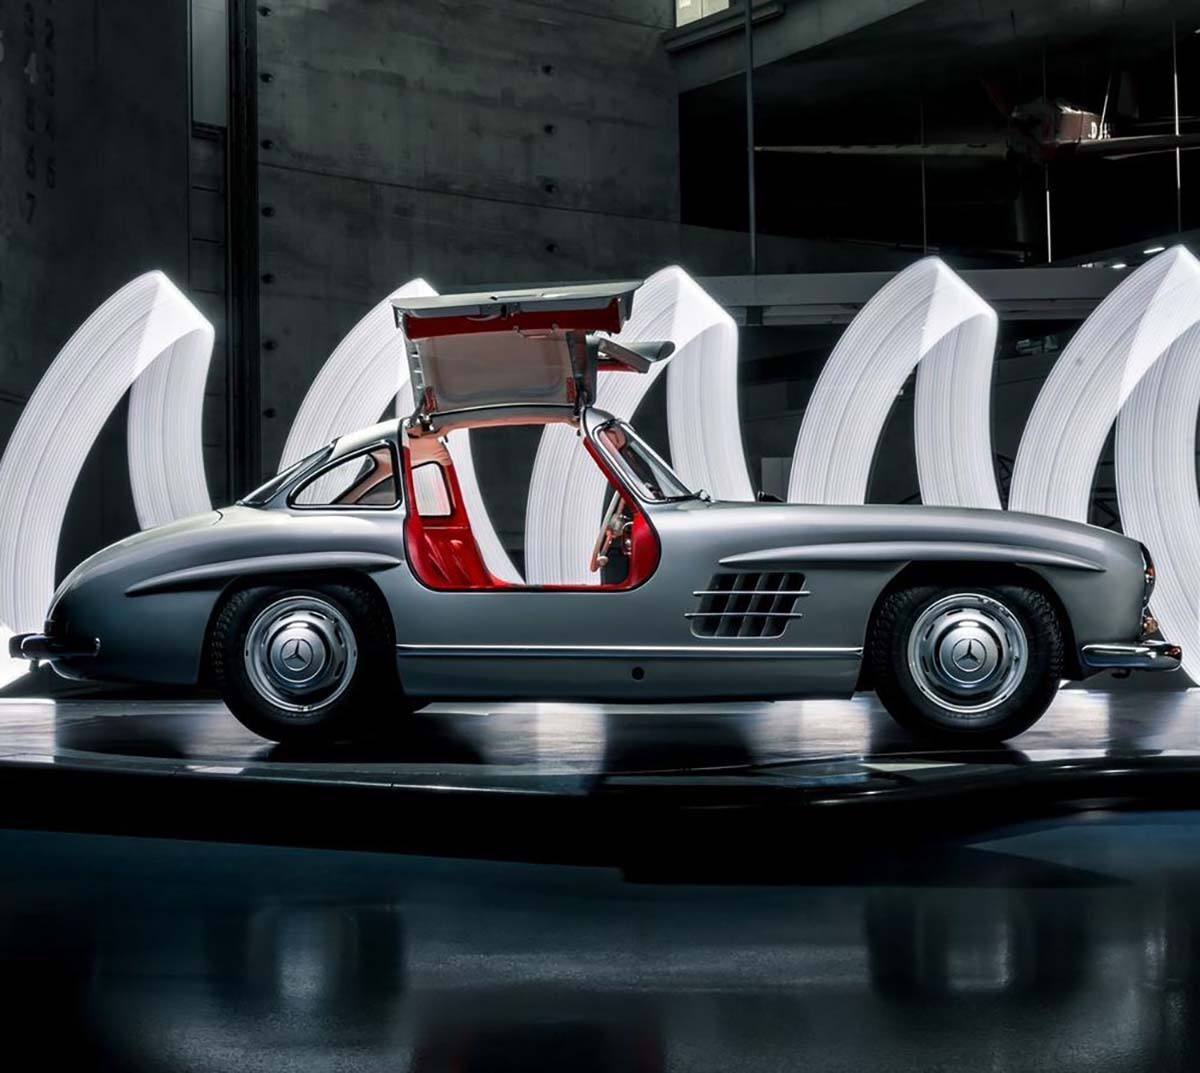 Los coches con los apodos más curiosos: Mercedes alas de gaviota